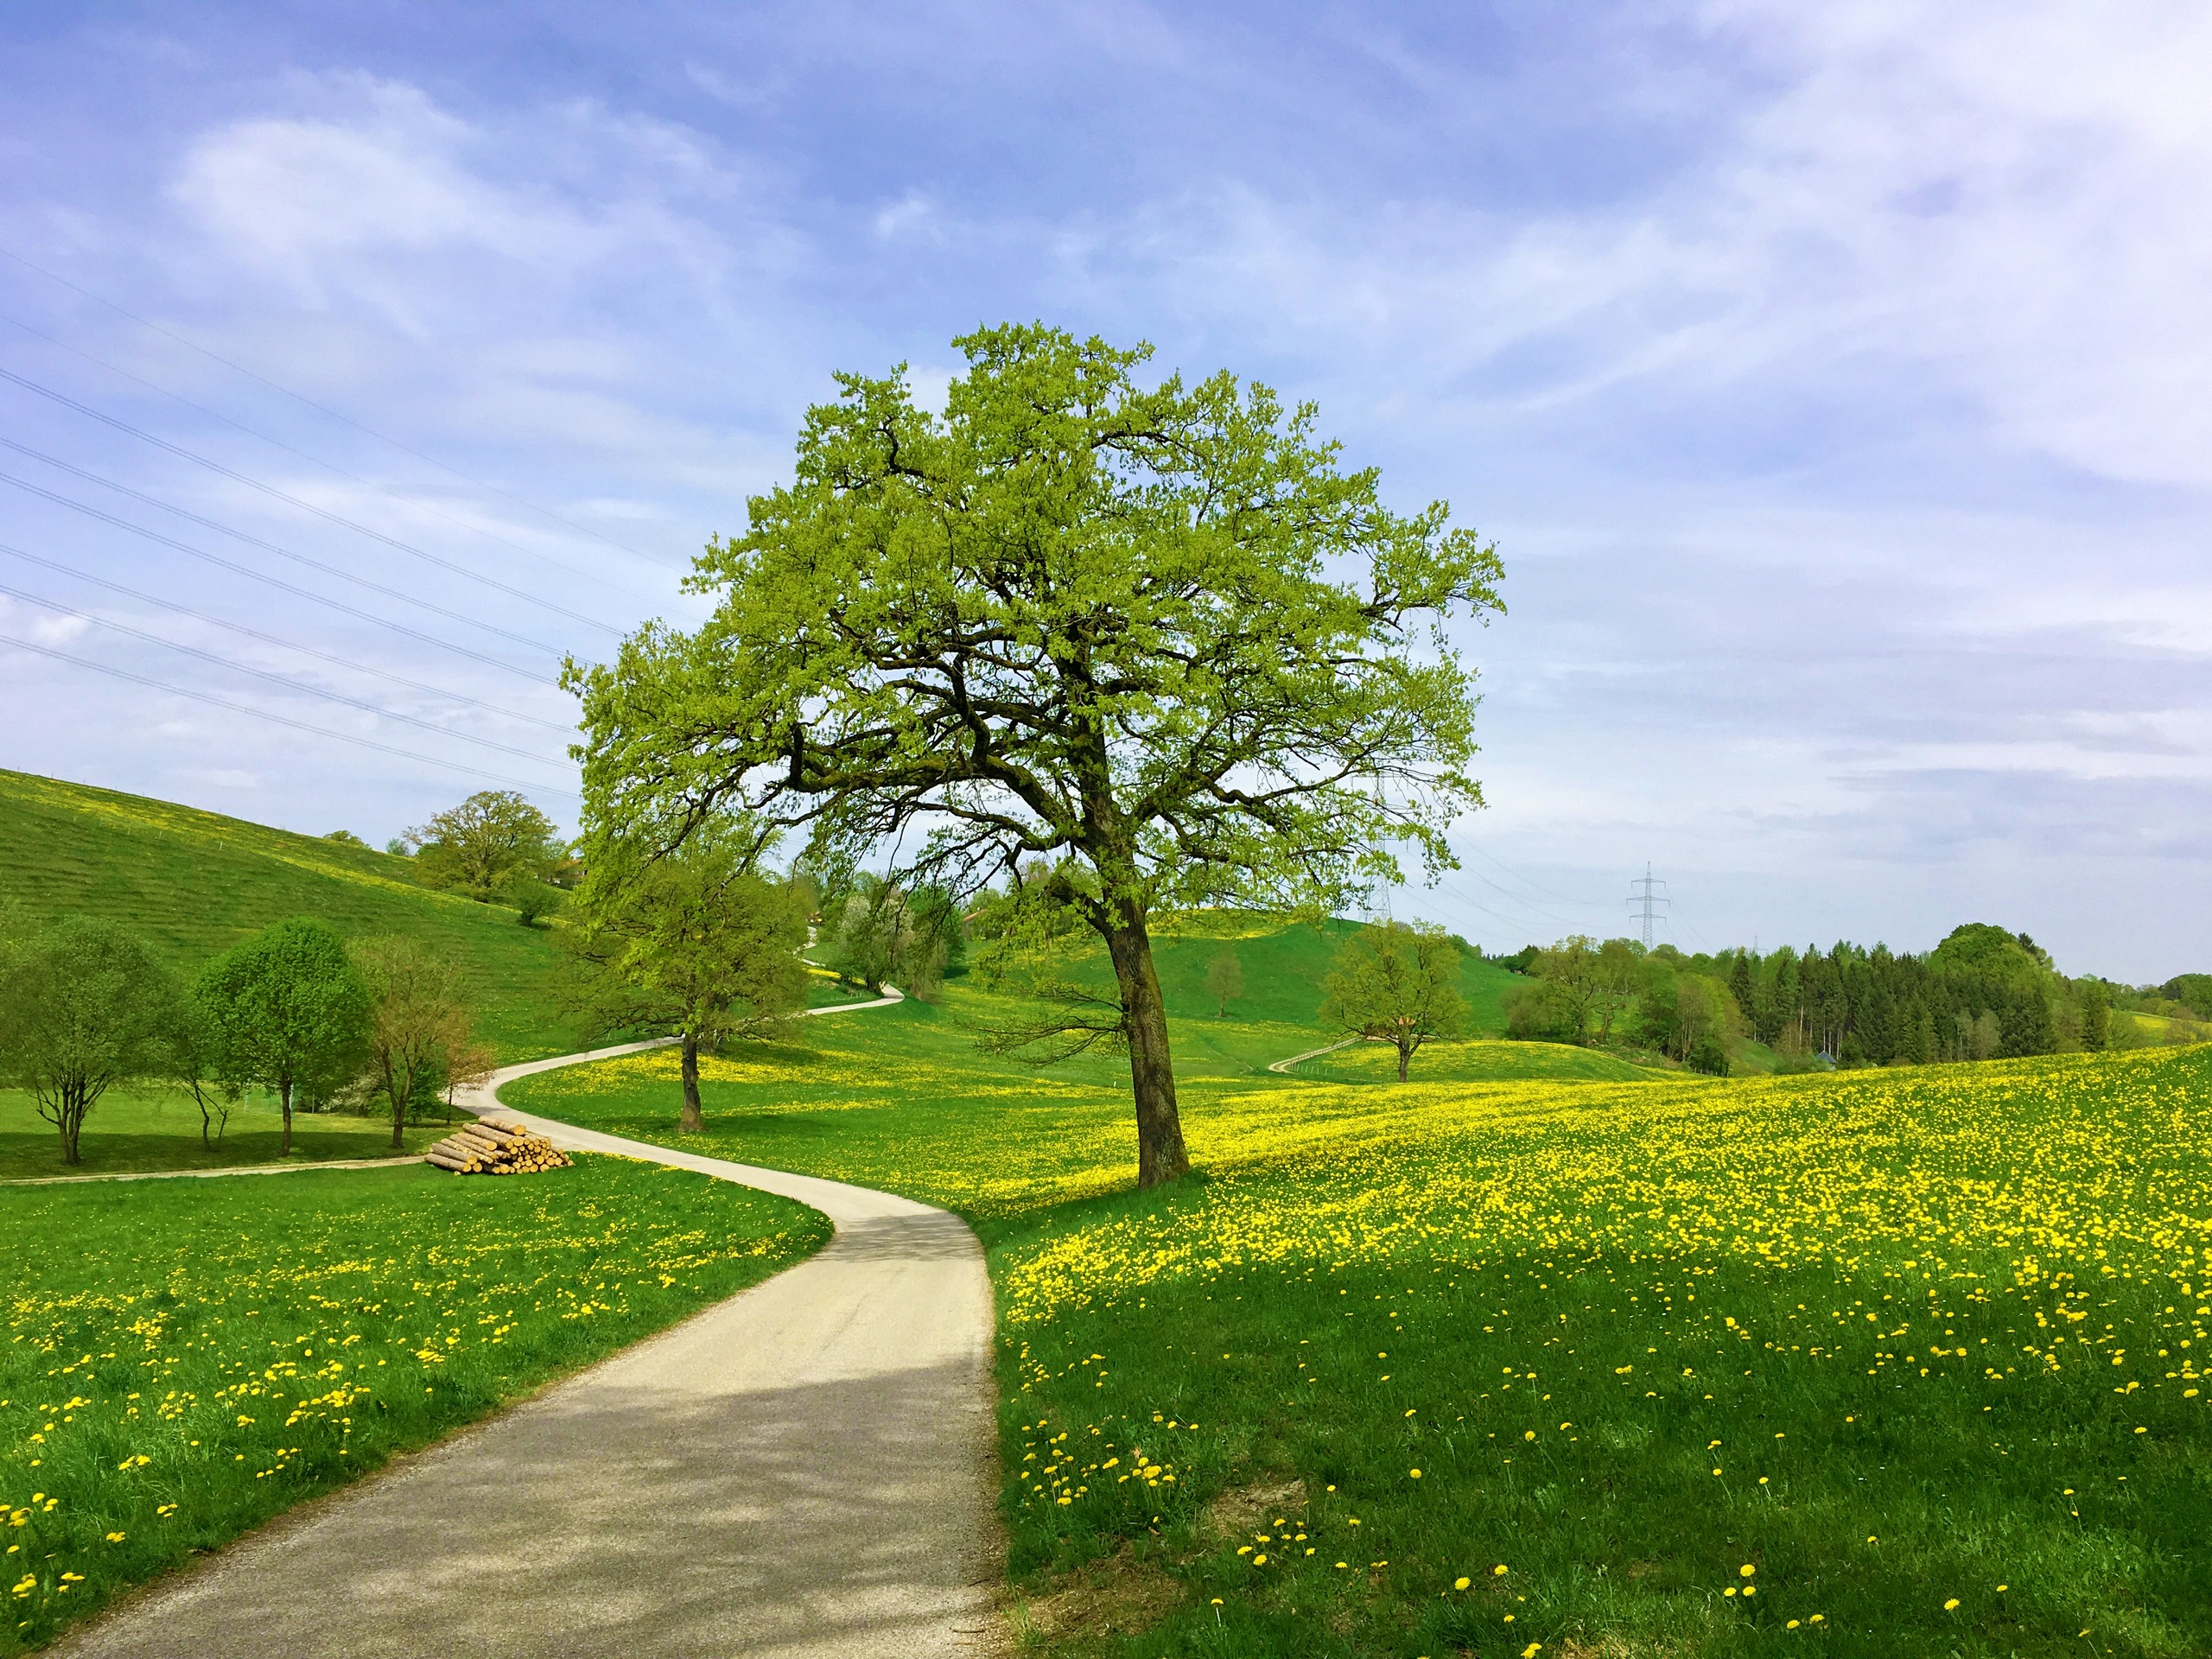 Crossing the green fields in Bavarian region, Germany